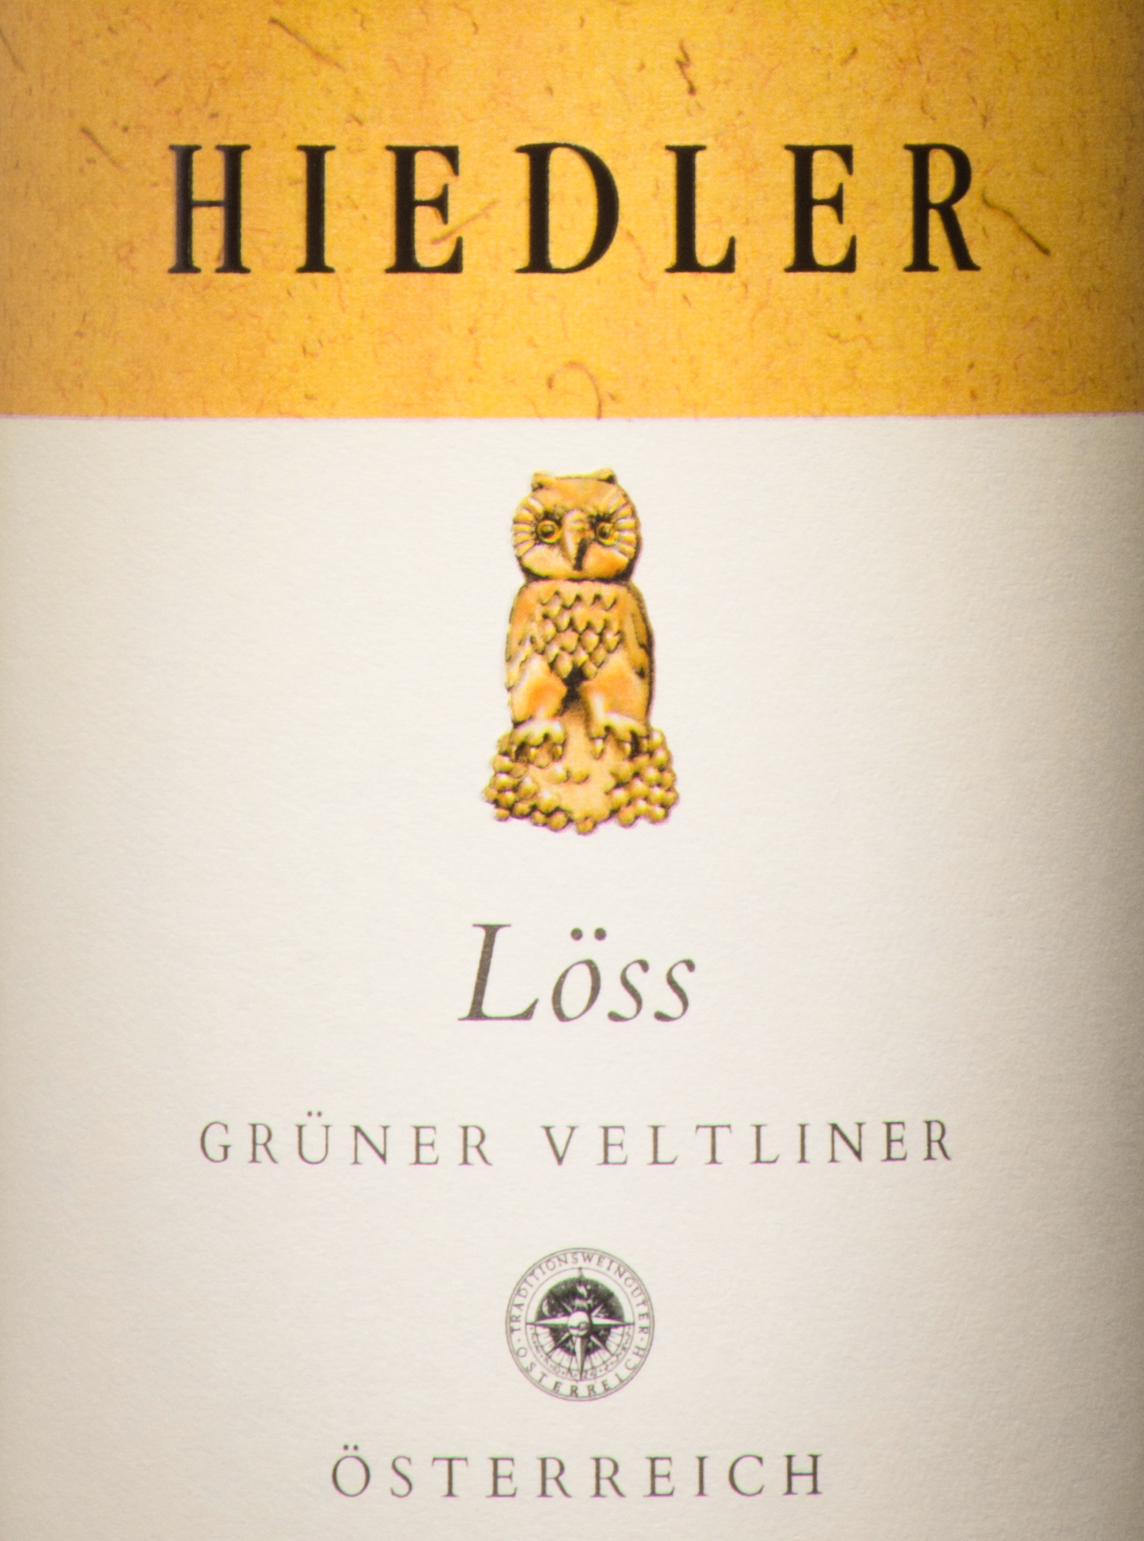 L. Hiedler \'Loess\' Skurnik Veltliner Grüner - Kamptal DAC Spirits Wines 